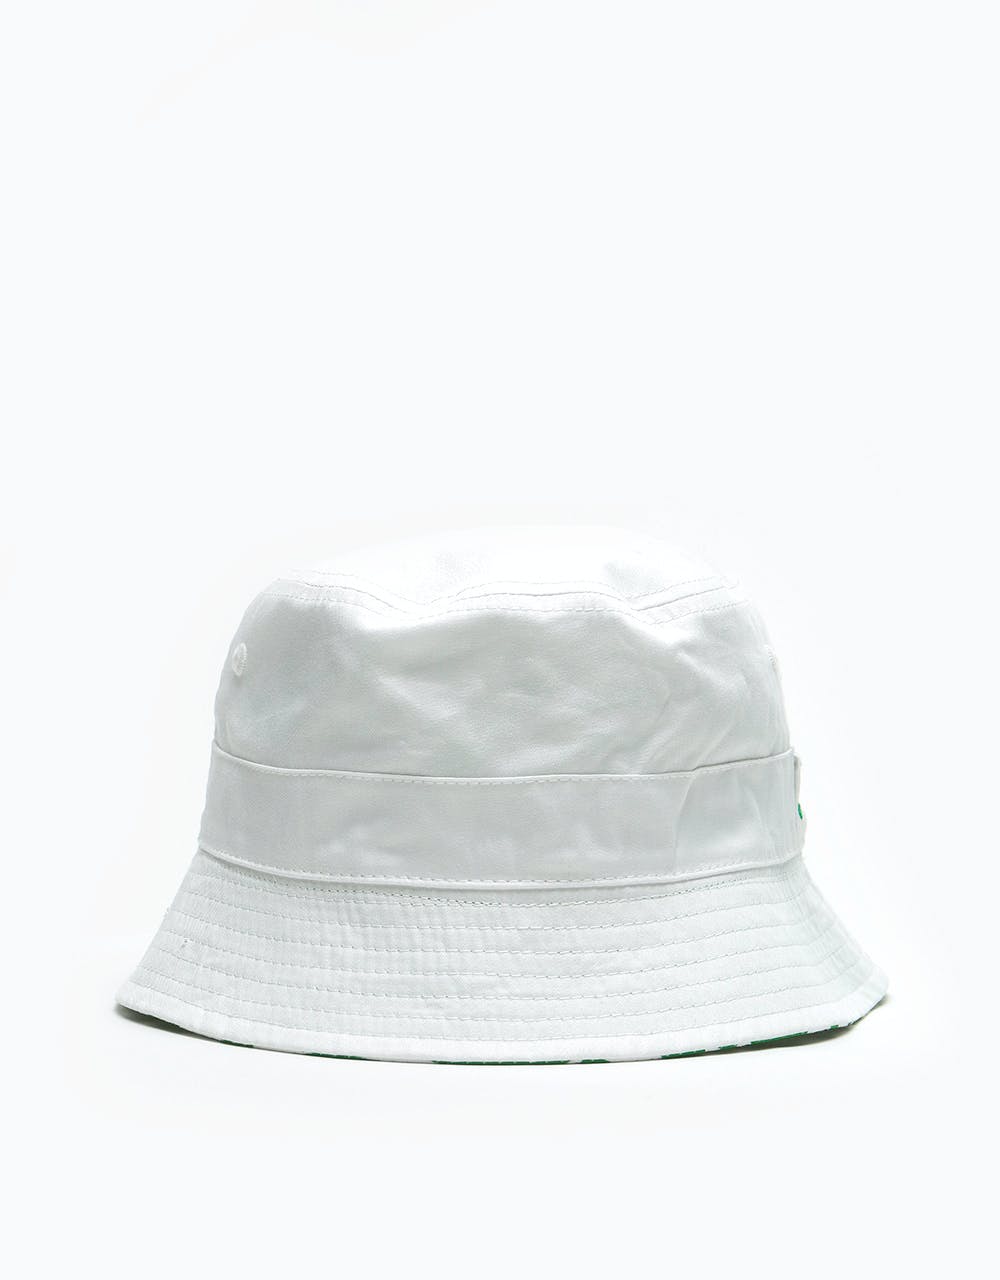 New Era Reversible Patterned Bucket Hat - Kelly Green